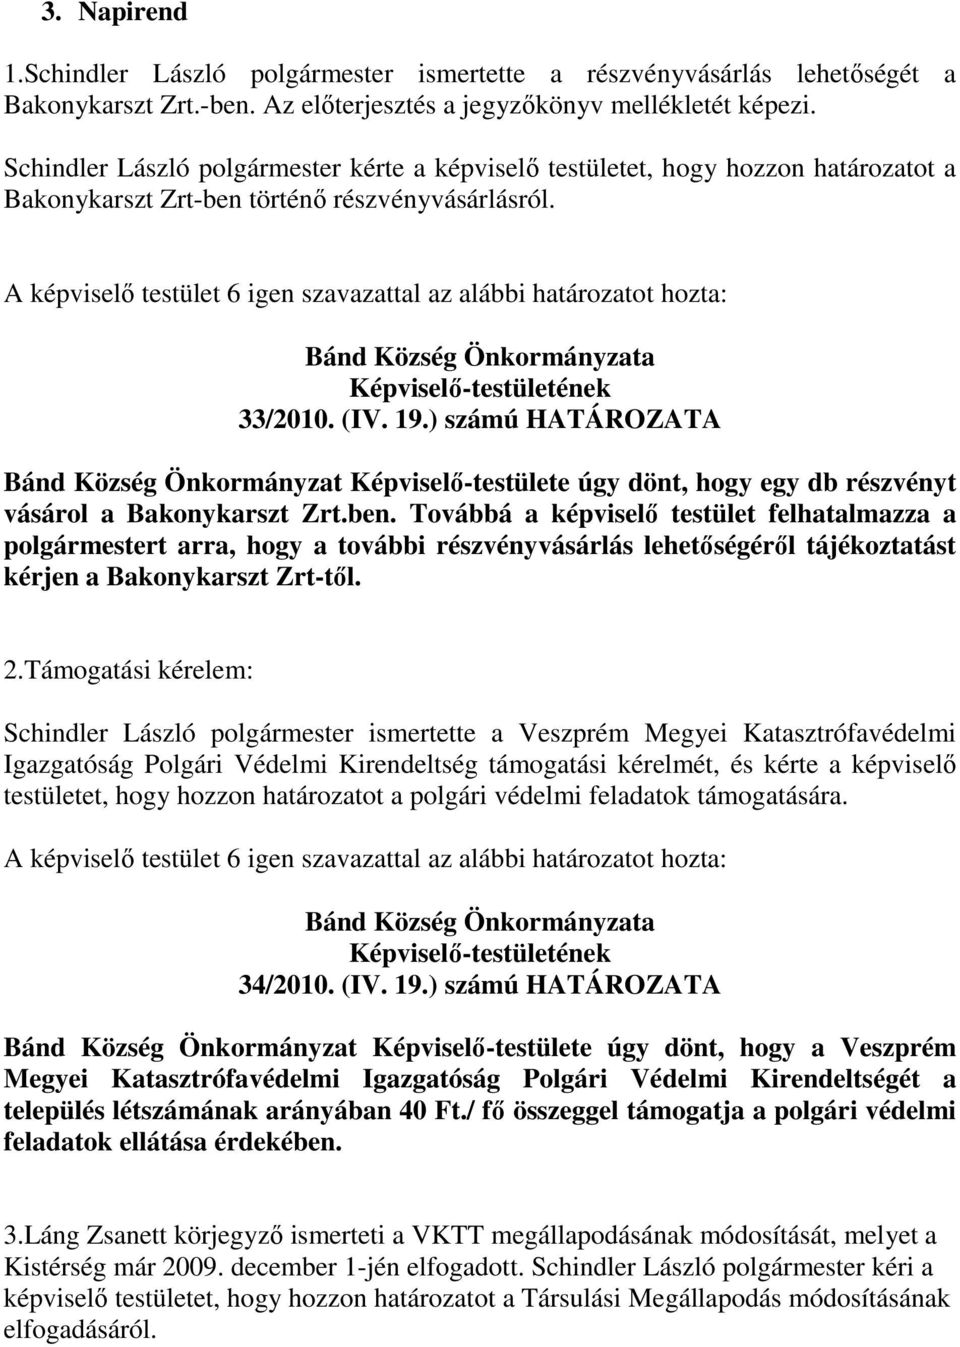 A képviselı testület 6 igen szavazattal az alábbi határozatot hozta: 33/2010. (IV. 19.) számú HATÁROZATA Bánd Község Önkormányzat -testülete úgy dönt, hogy egy db részvényt vásárol a Bakonykarszt Zrt.